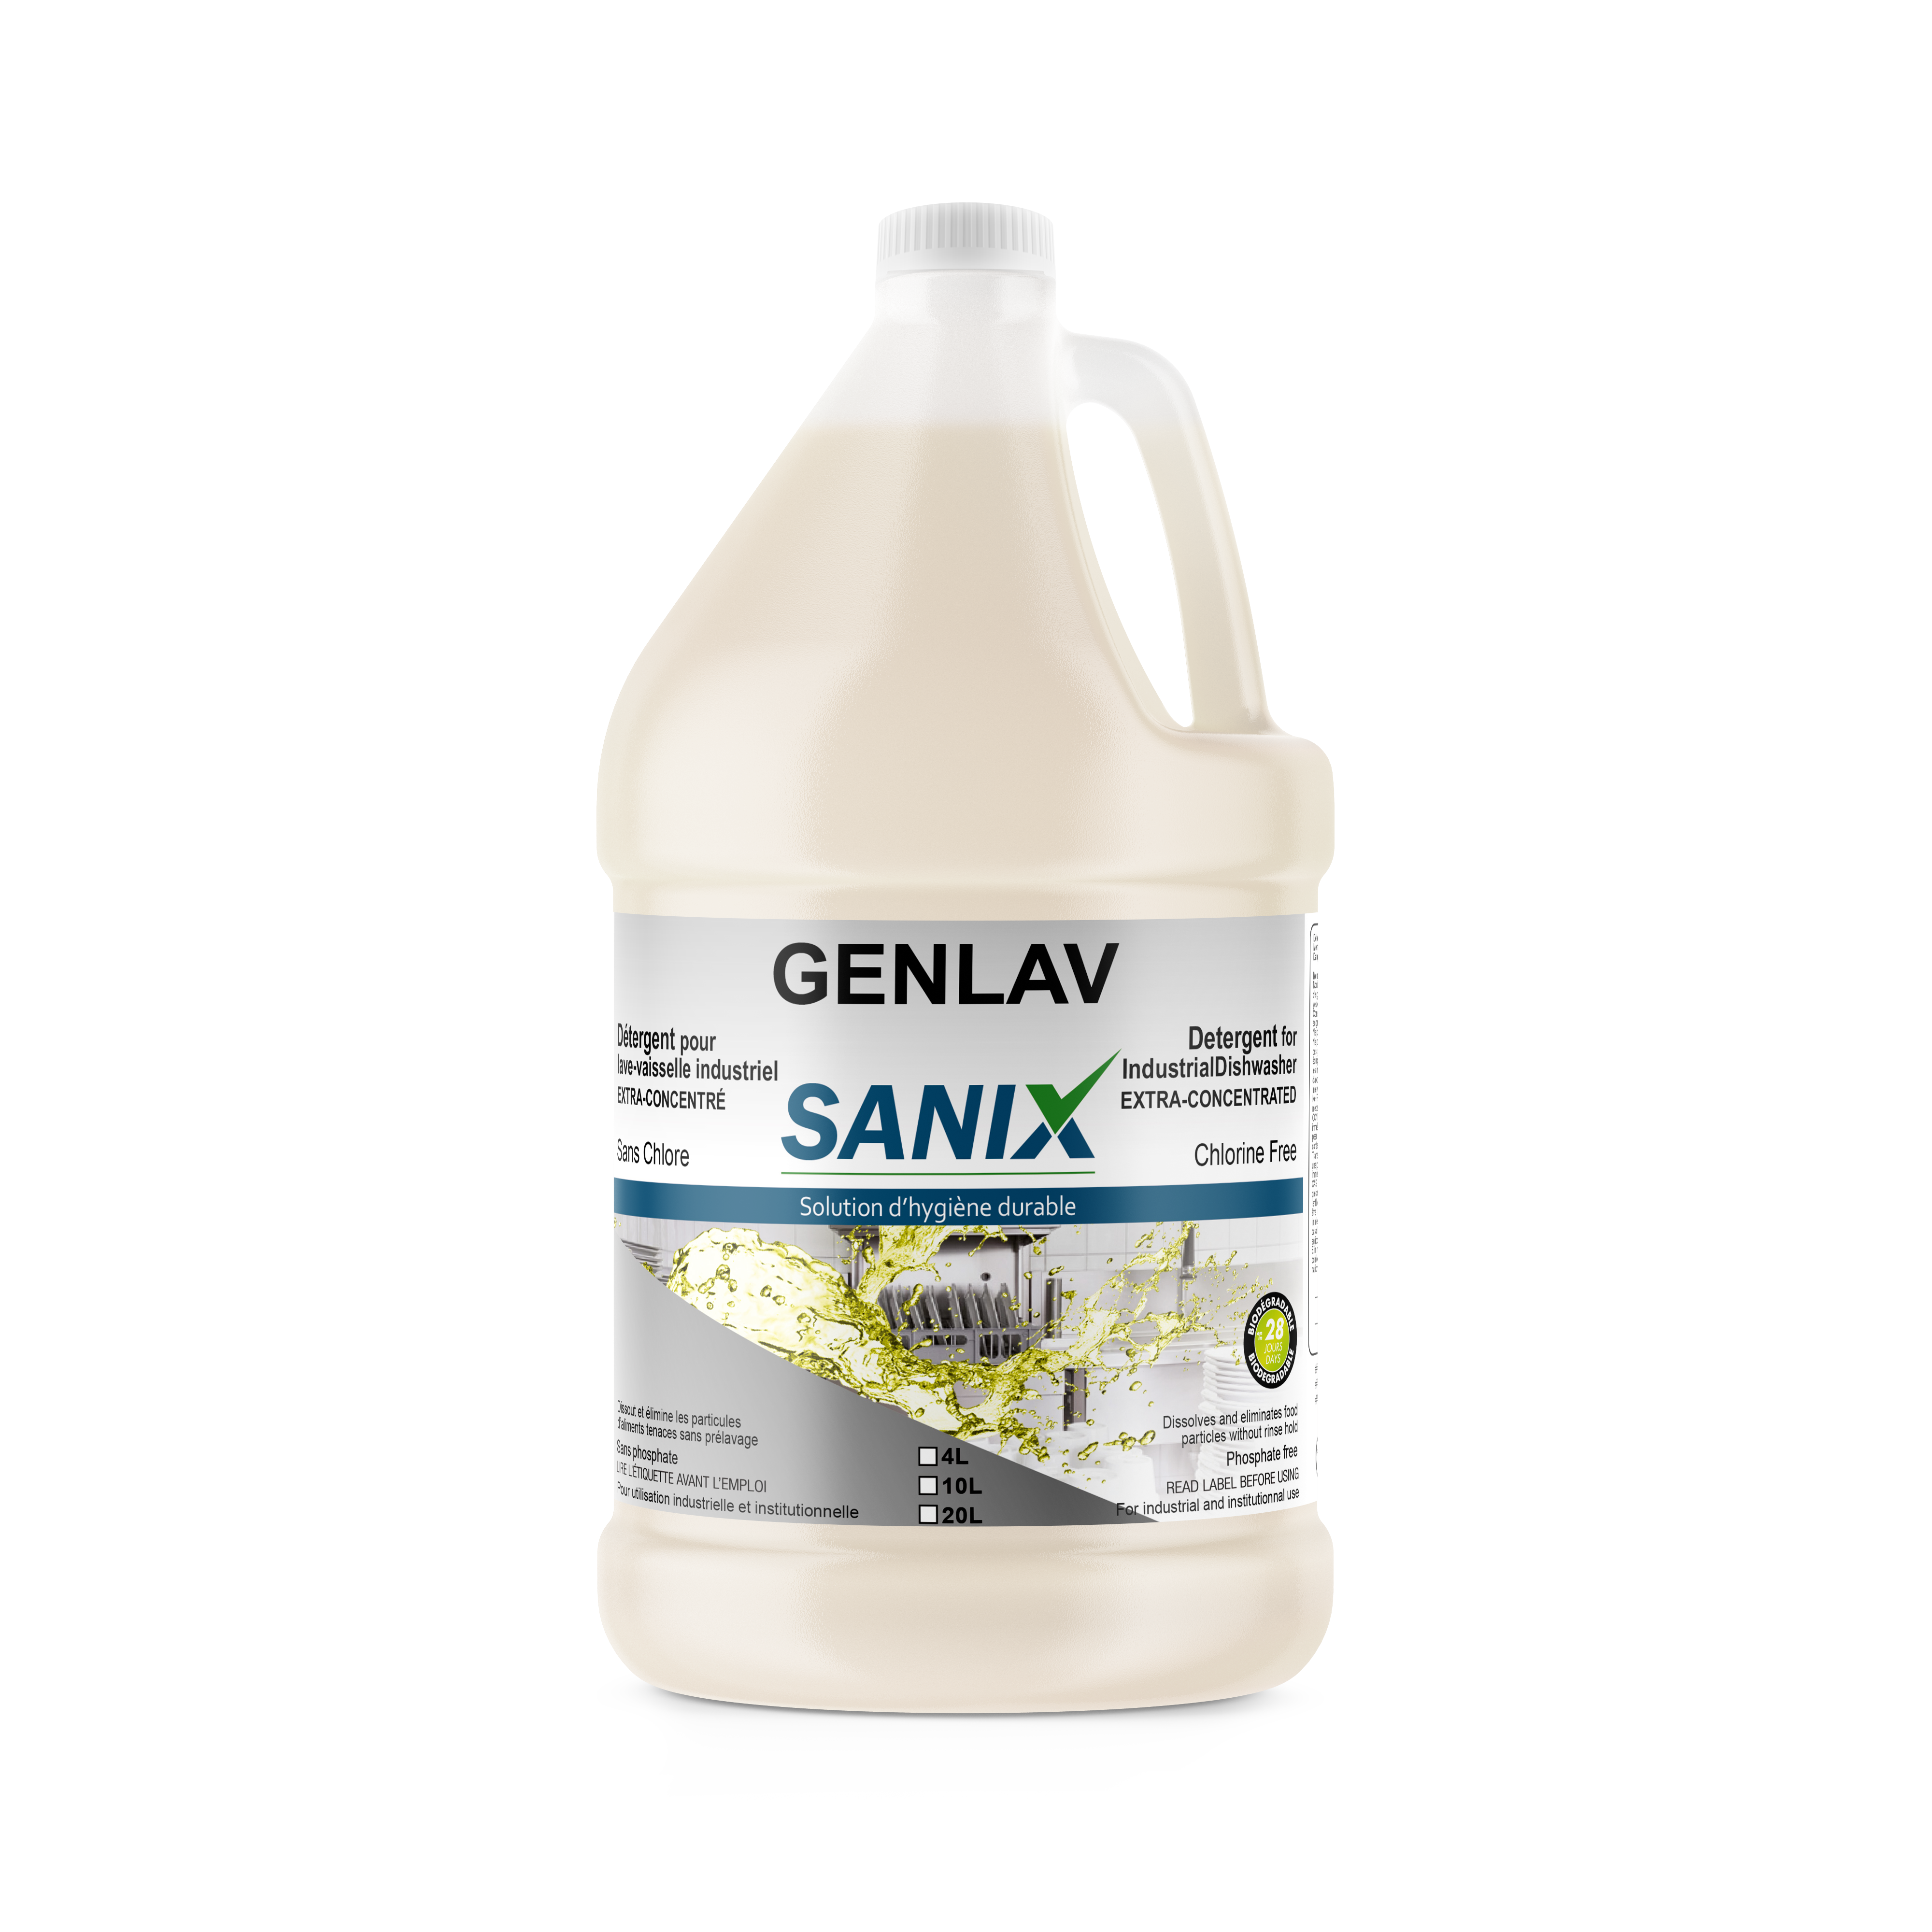 Genlav détergent pour lave-vaisselle commercial 4L - SANIX - Commande en  ligne